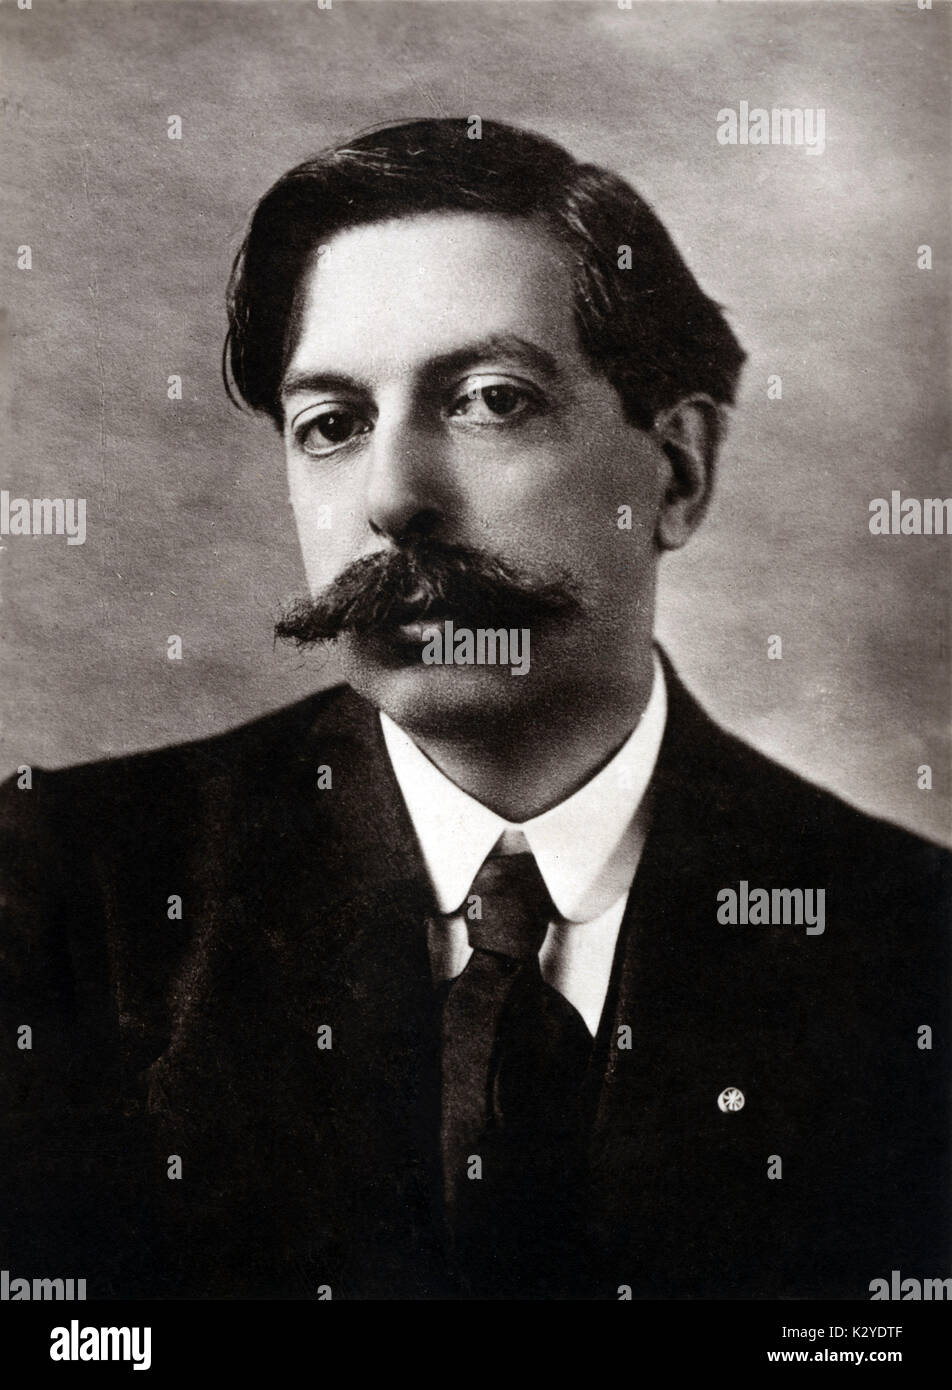 Retrato de Enrique Granados compositor español, 1867-1916 Foto de stock